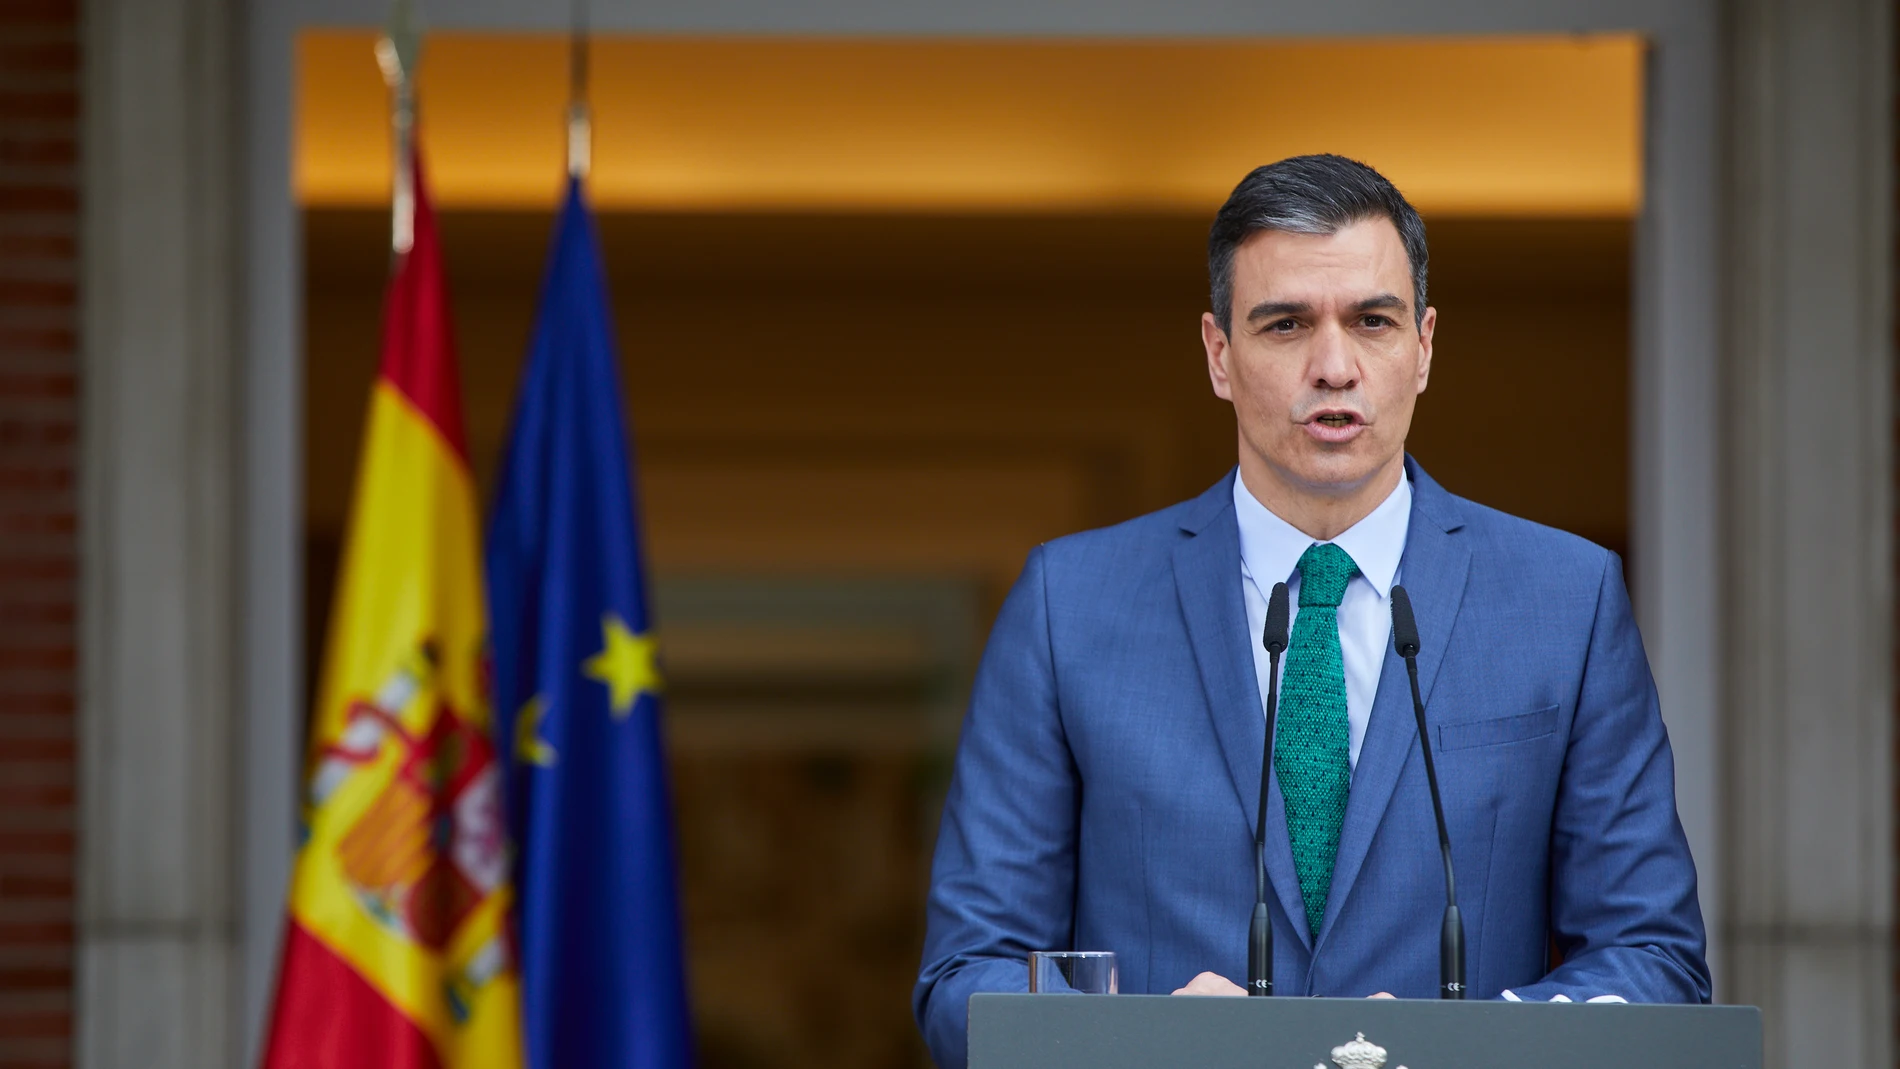 El presidente del Gobierno, Pedro Sánchez, comparece ante los medios para informar sobre los cambios en el Ejecutivo